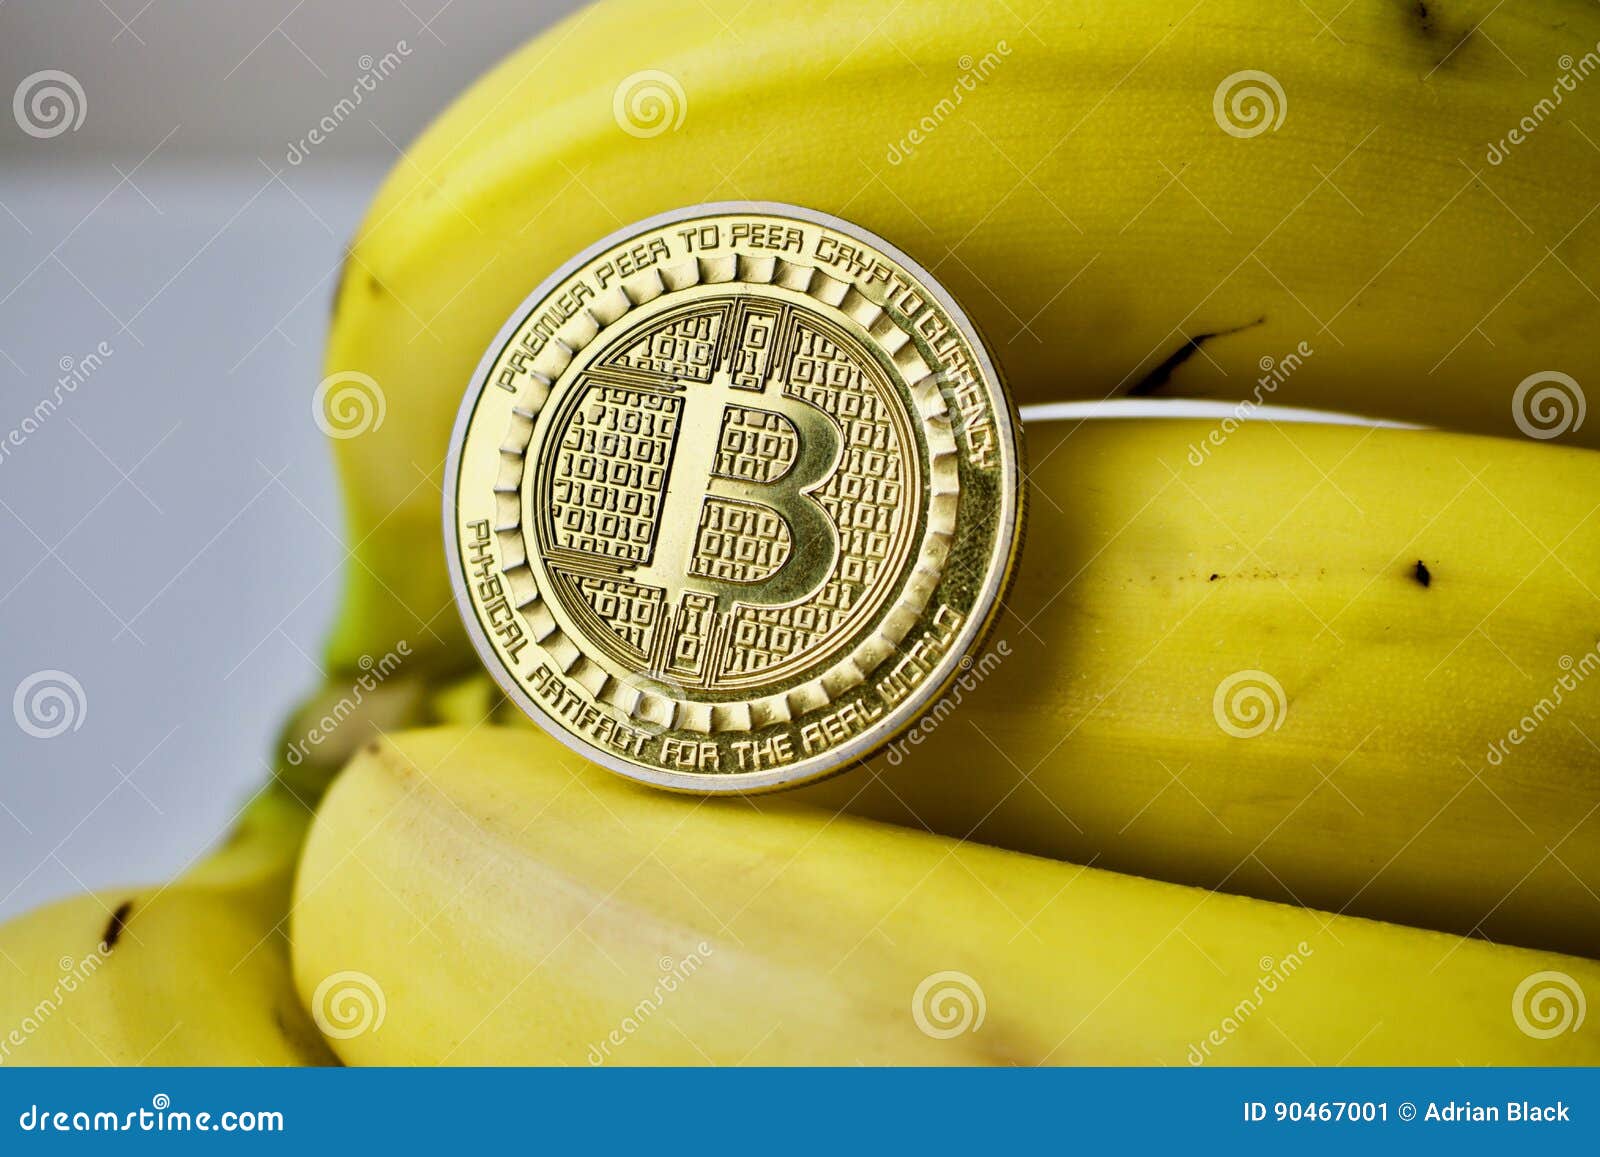 bitcoin banana)